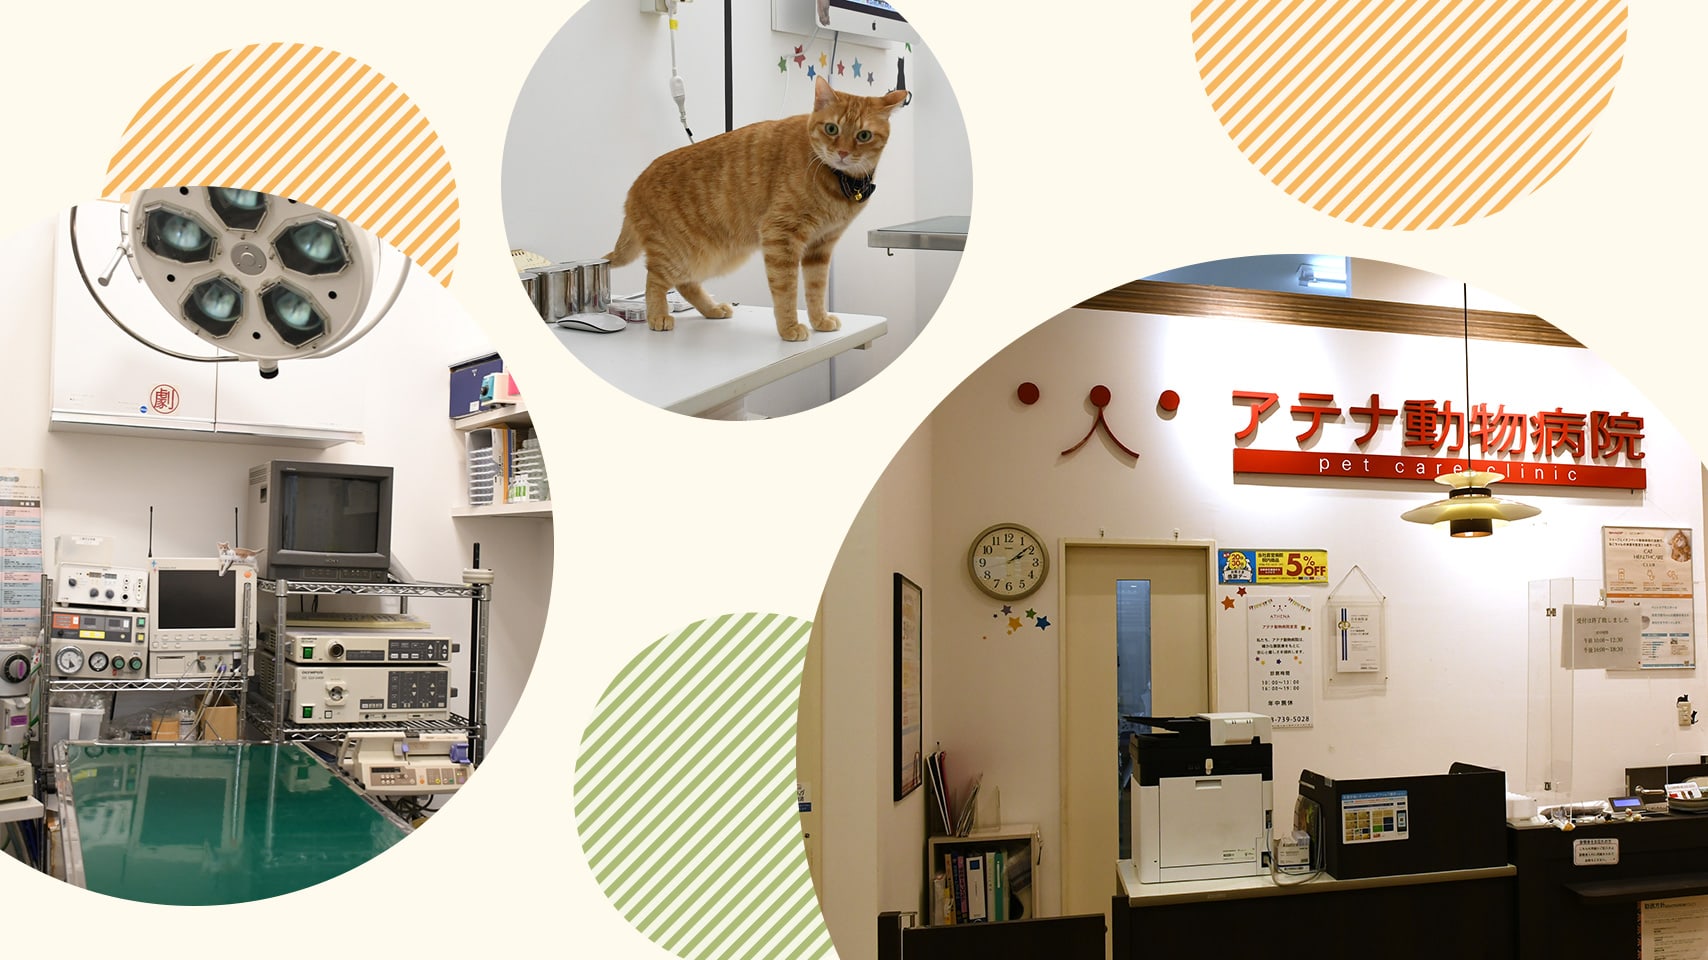 アテナ動物病院 ララガーデン春日部 埼玉県春日部市 大切なペットの健康をサポートします イオンペットの動物病院